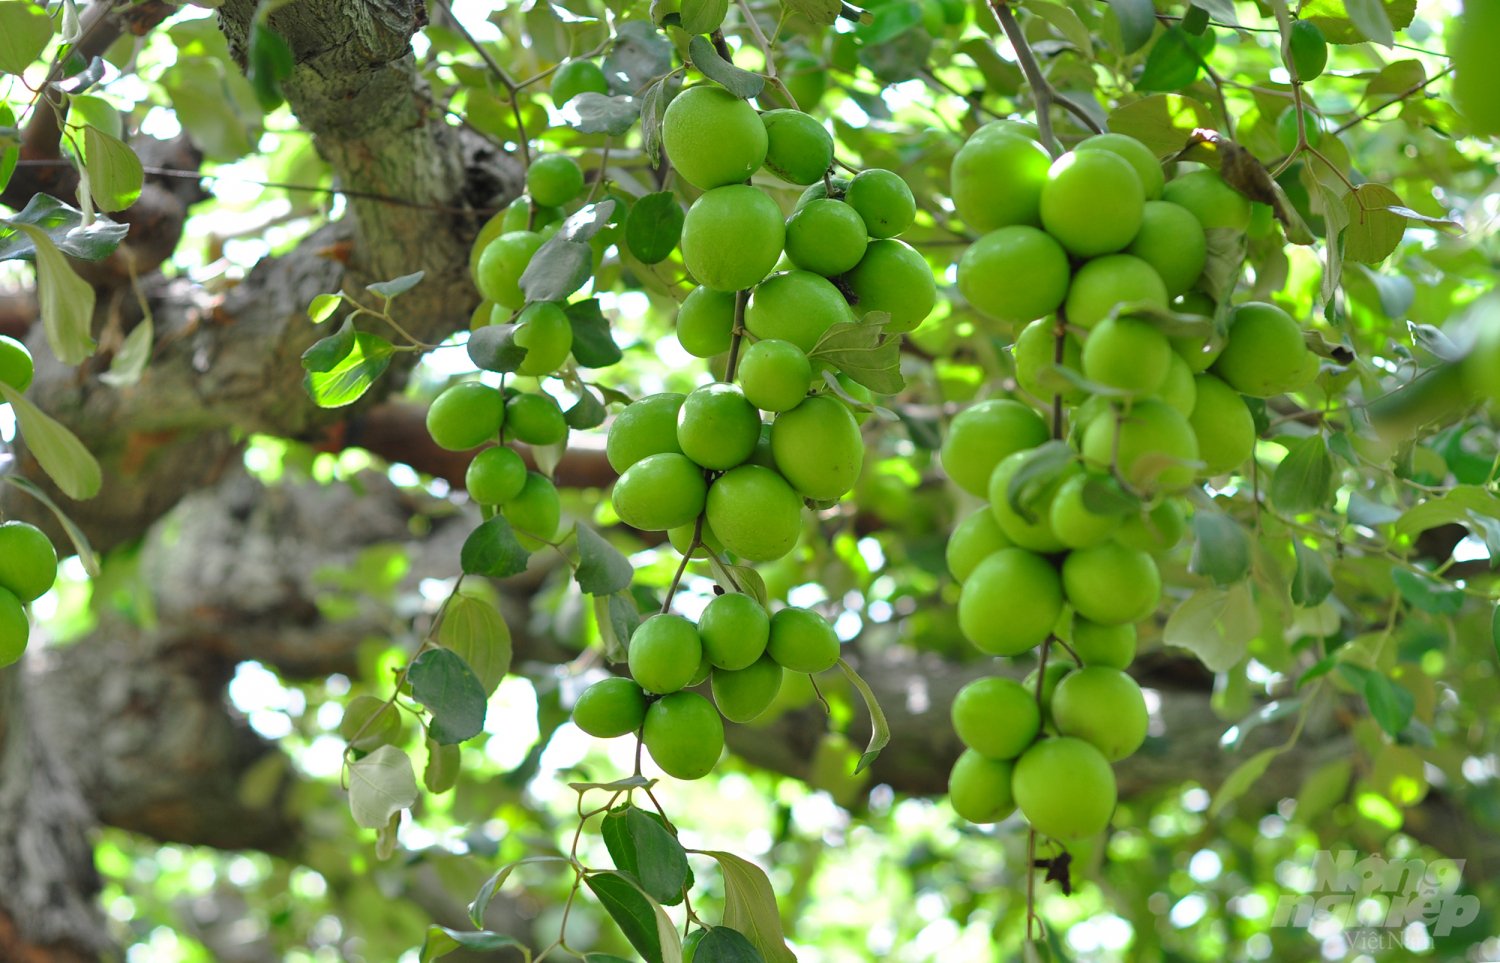 Tại xã Phước Hậu (huyện Ninh Phước), các mô hình chuyển đổi cây lúa sang phát triển táo đều cho hiệu quả cao. Theo nông dân, giá trị sản xuất táo hiện cao gấp ít nhất 3 lần so với cây lúa. 